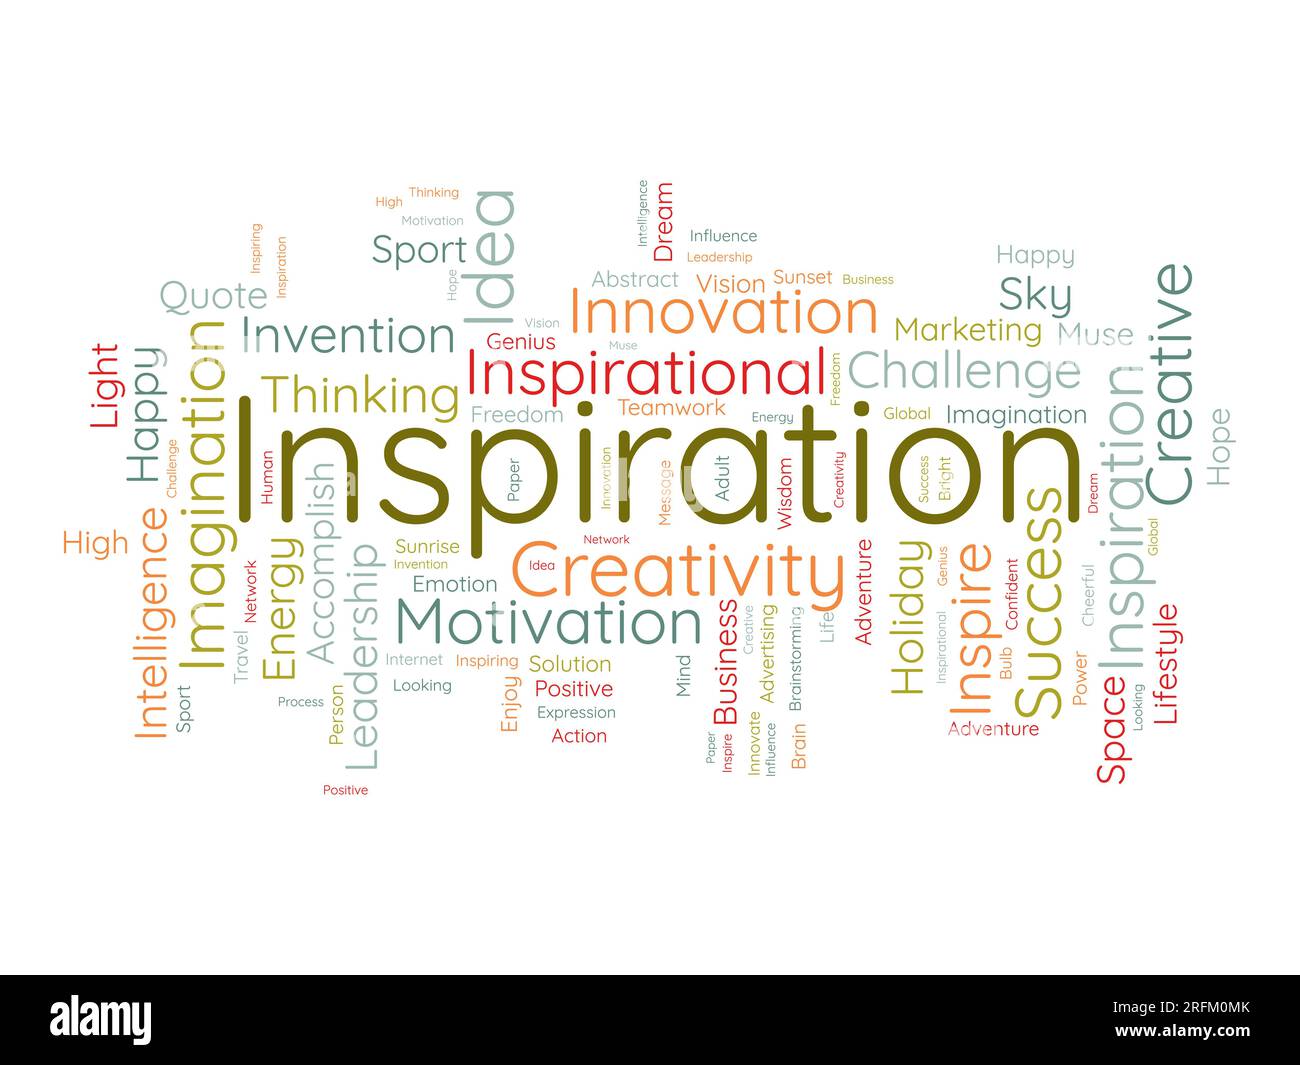 Word Cloud-Hintergrundkonzept für Inspiration. Kreative Innovation, Intelligenz, Vorstellungskraft der Vision eines Unternehmens. vektordarstellung. Stock Vektor